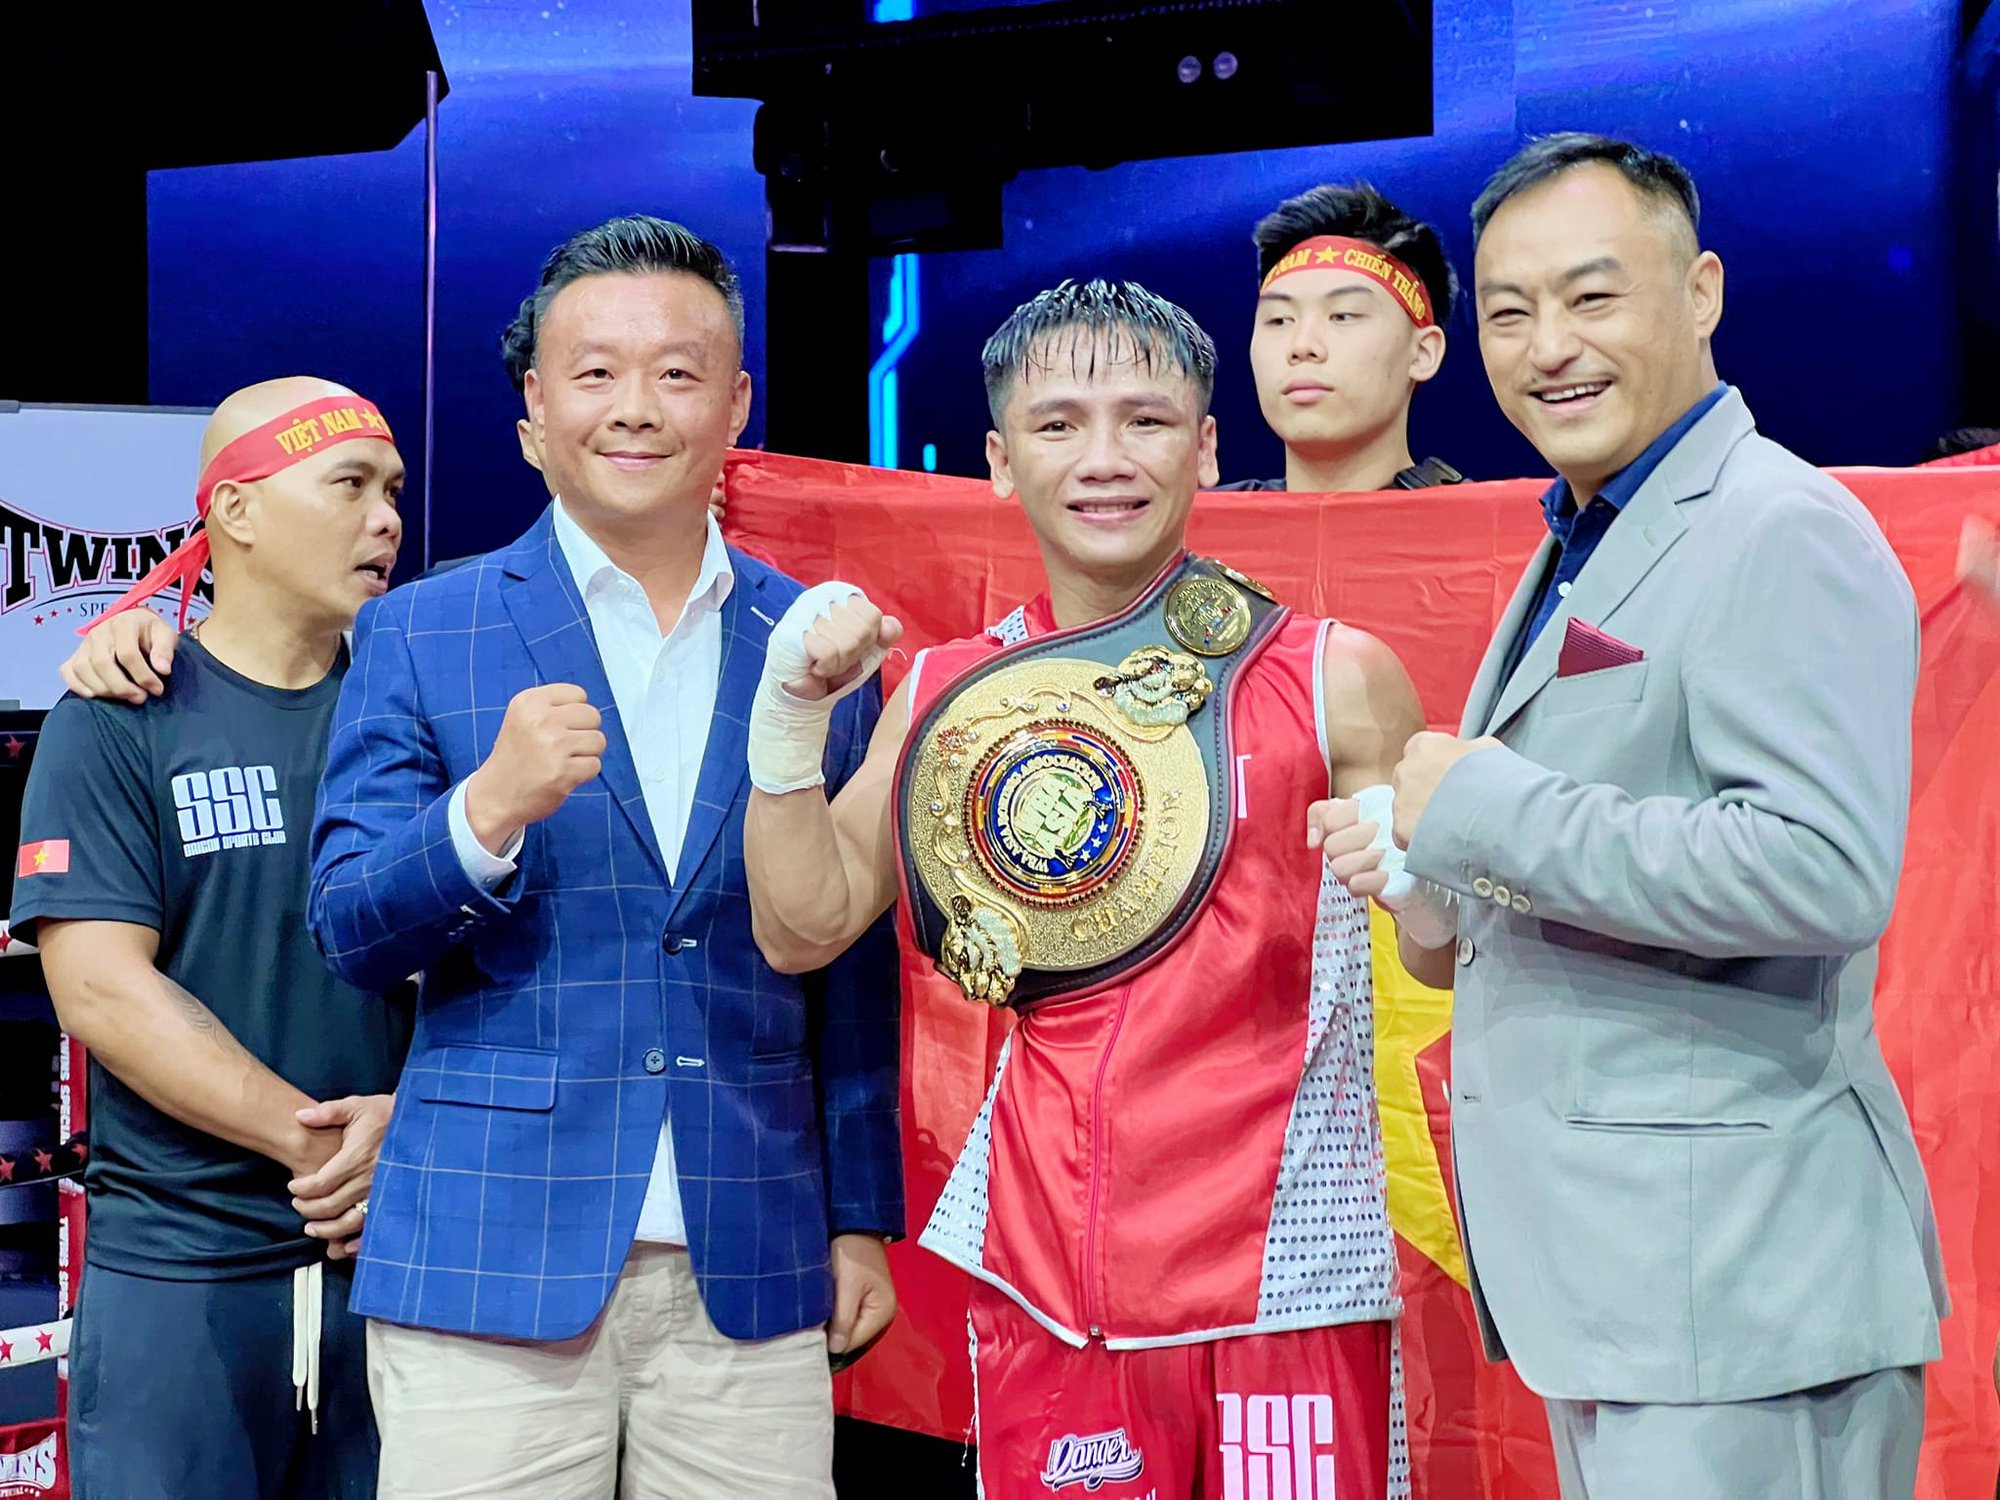 Võ sĩ Lê Hữu Toàn đạt thứ hạng lịch sử trên BXH boxing thế giới - Ảnh 2.